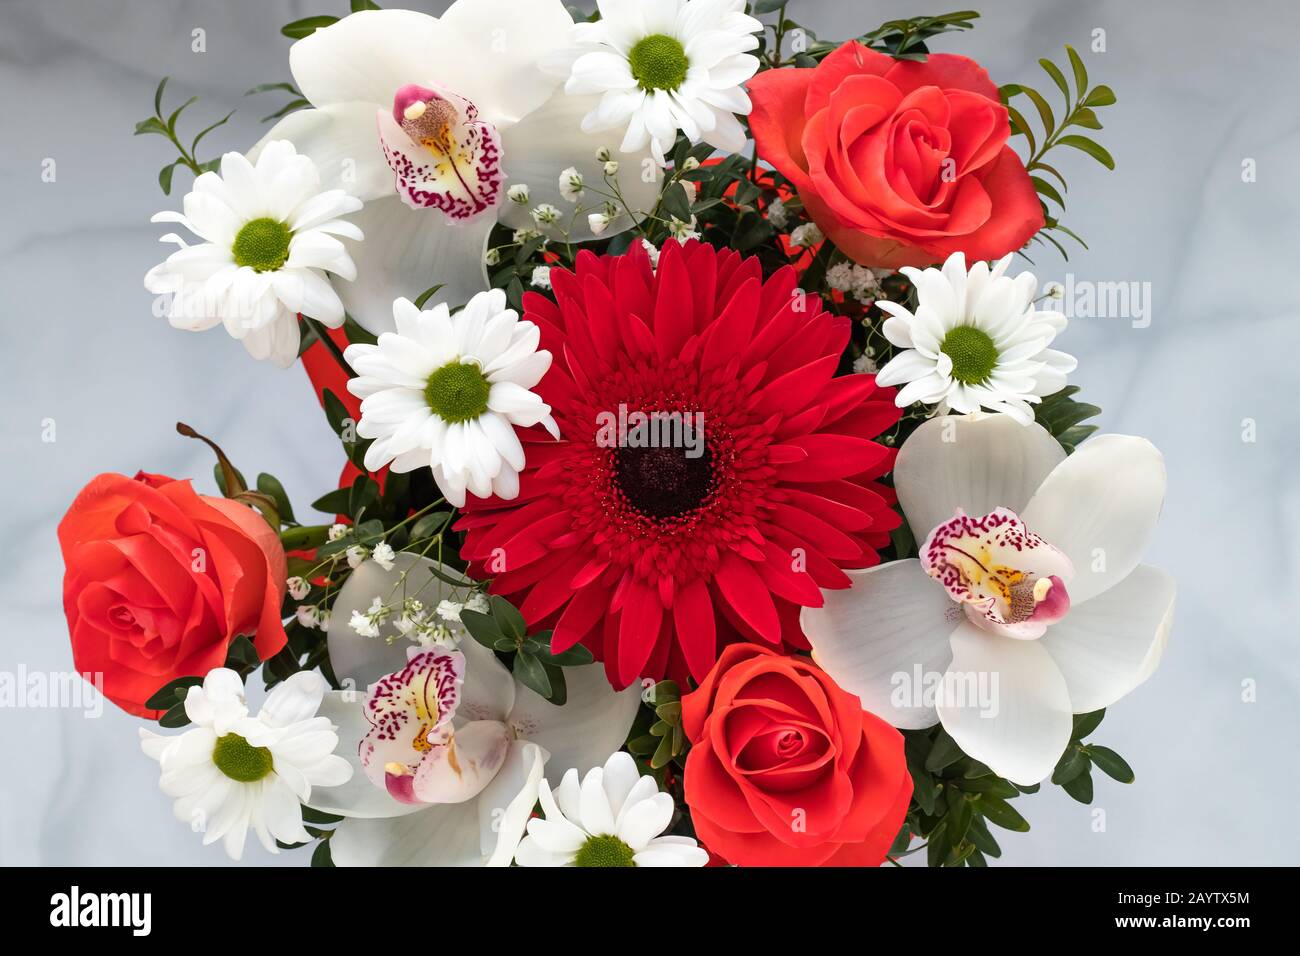 Blumenstrauß mit bunten Blumen Draufsicht auf grauem Hintergrund. Geschenkgutschein mit Kunstflorett, Naturmuster Stockfoto